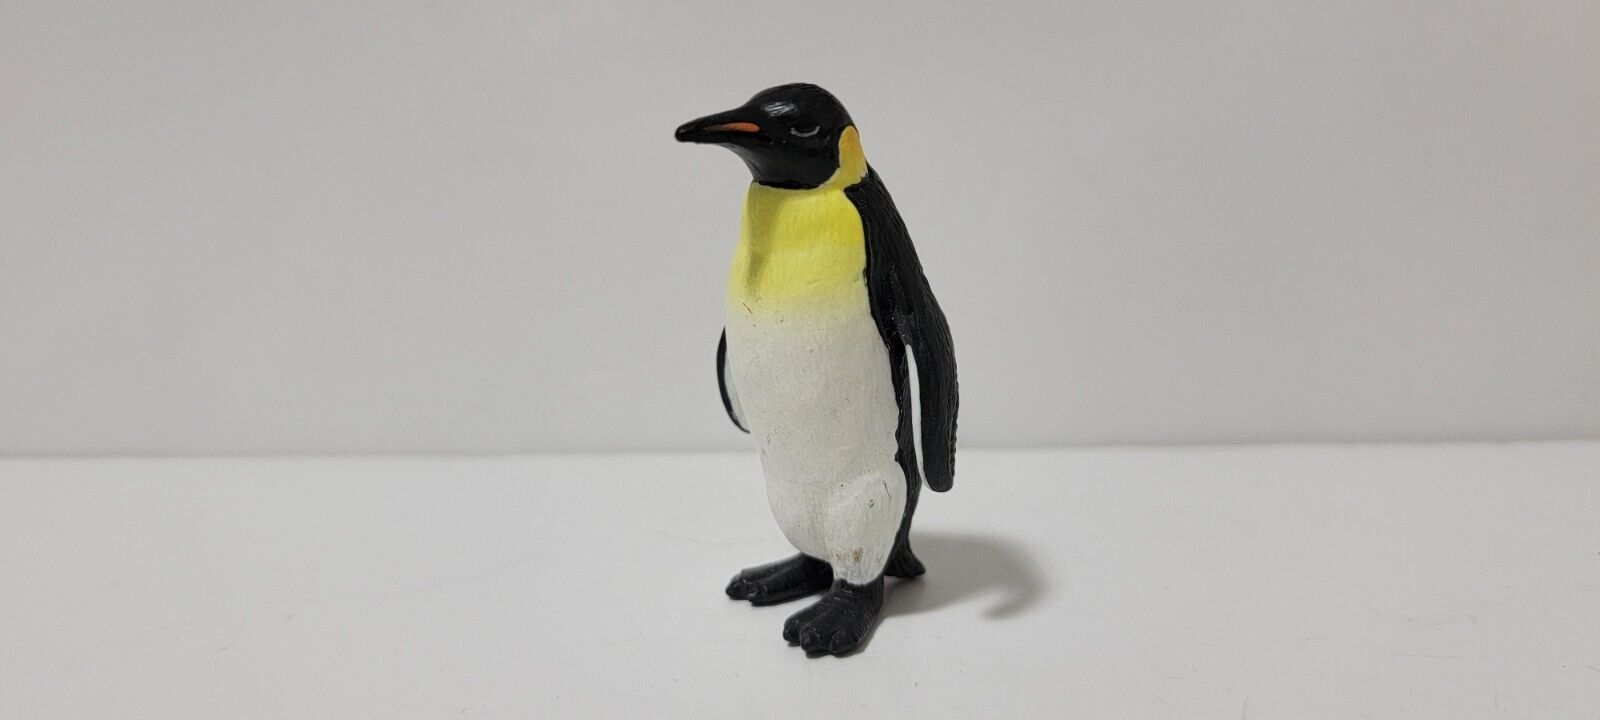 Schleich 14140 Standing Emperor Penguin 1998 2010 RETIRED